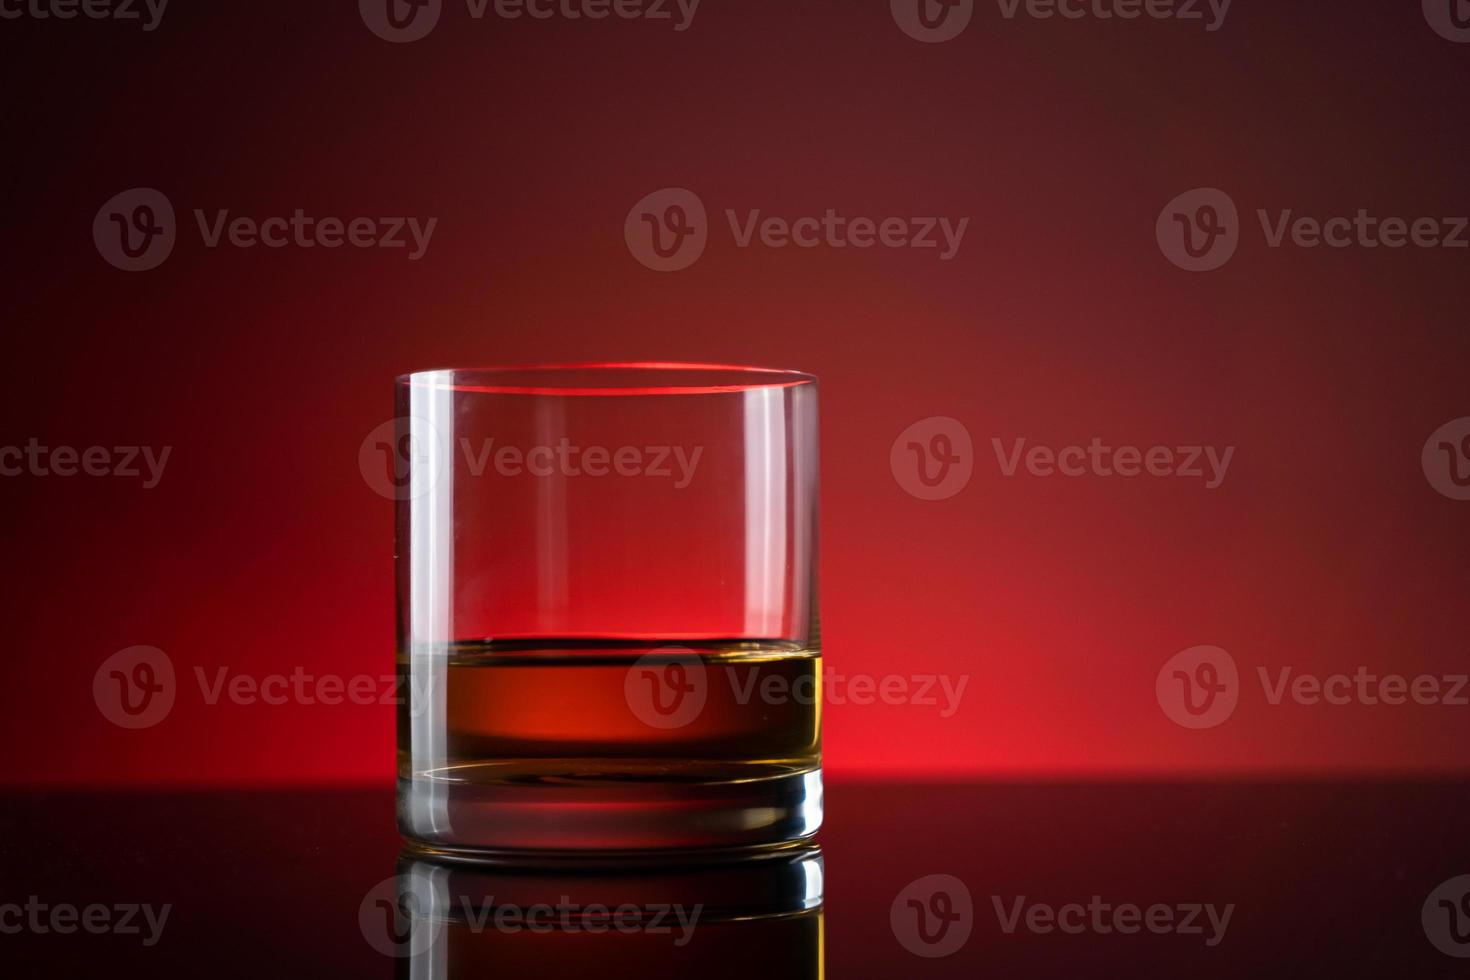 elegante y sencillo vaso de whisky de lujo con fondo negro. fondo aislado de vidrio de whisky brillante, foto de estudio. espacio de copia. bebida alcohólica fuerte.